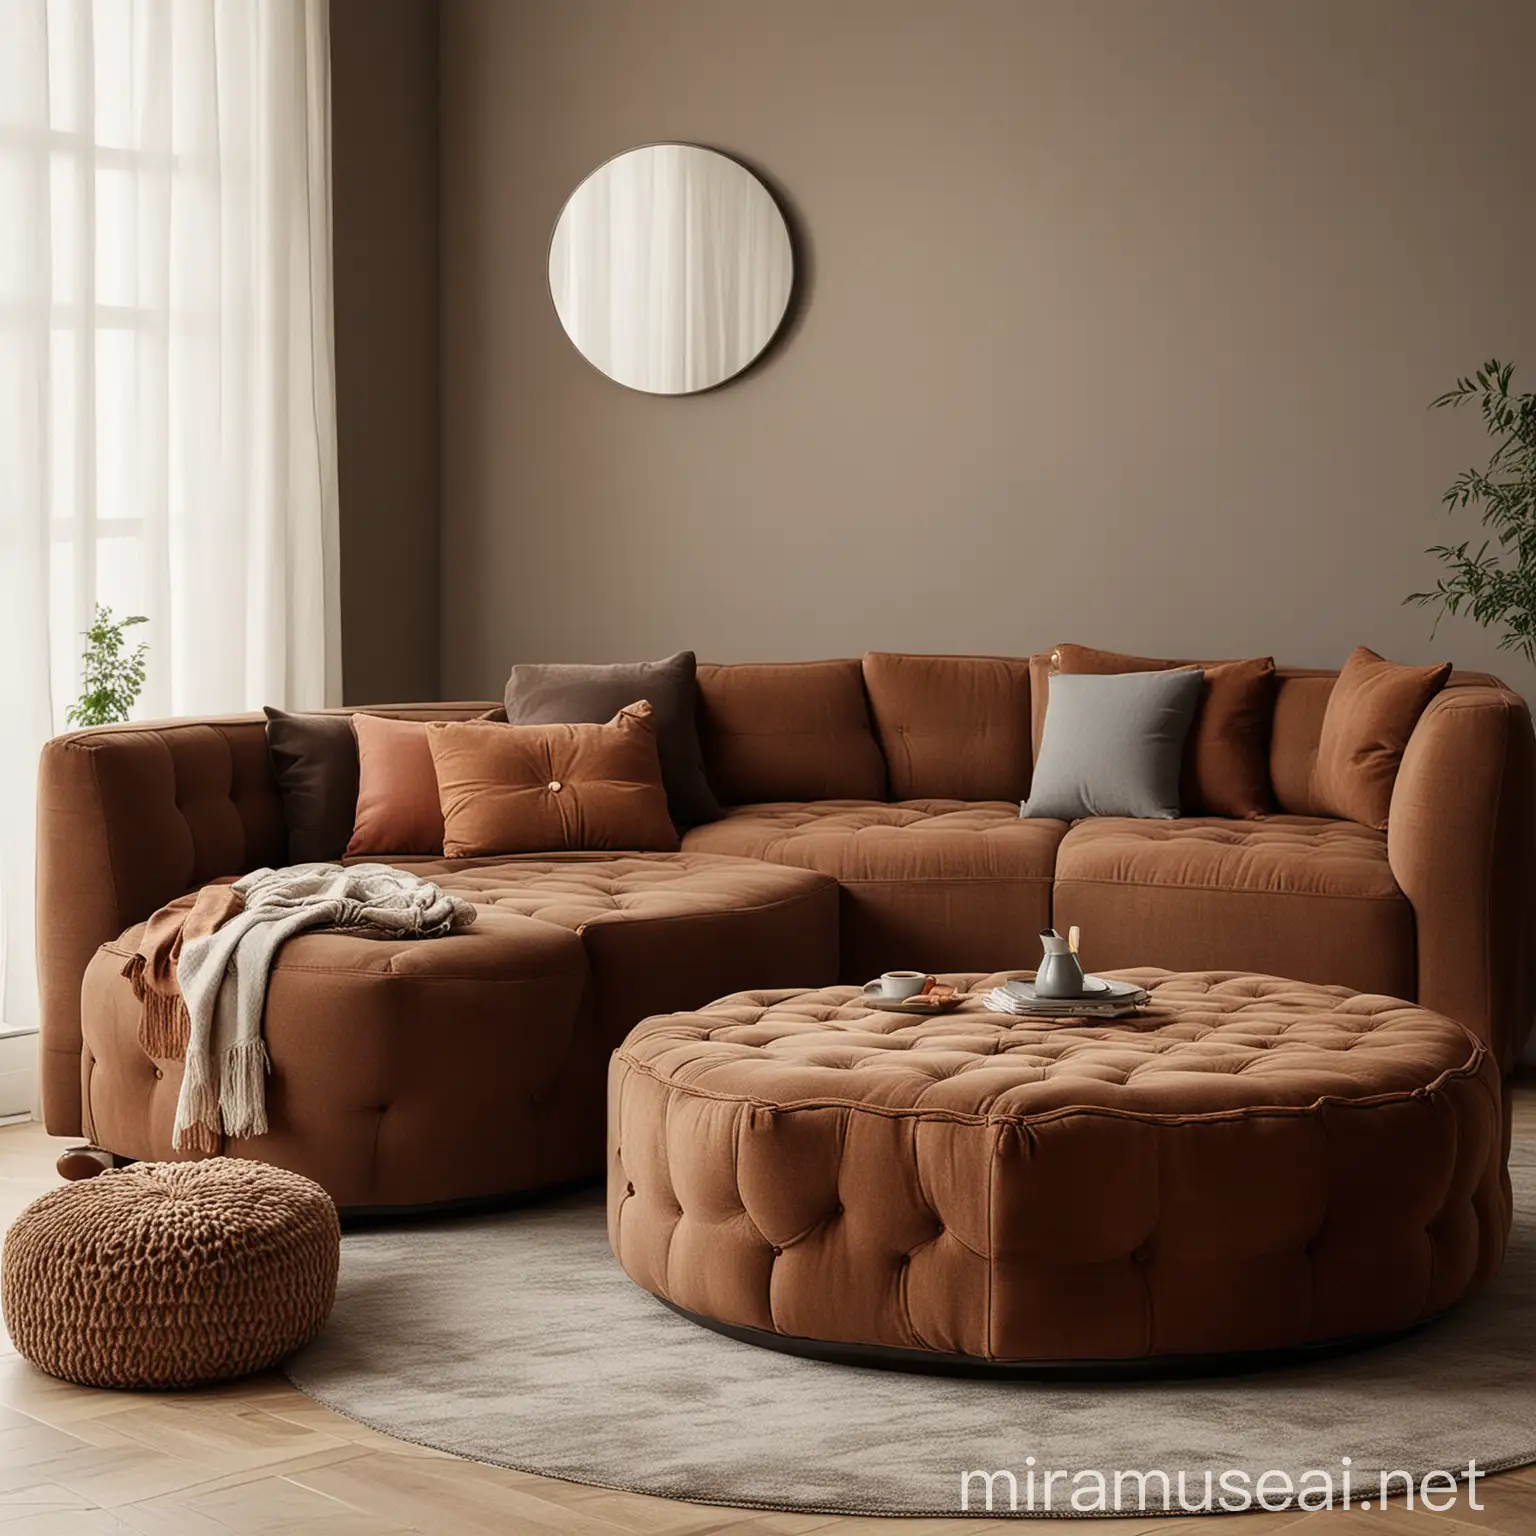 Bej tonda bir oturna odasında, kahverengi tonlarda bir kanepe tasarla. Kanepenin kumaşı pürüzlü, minik altıgen desenlerde olsun